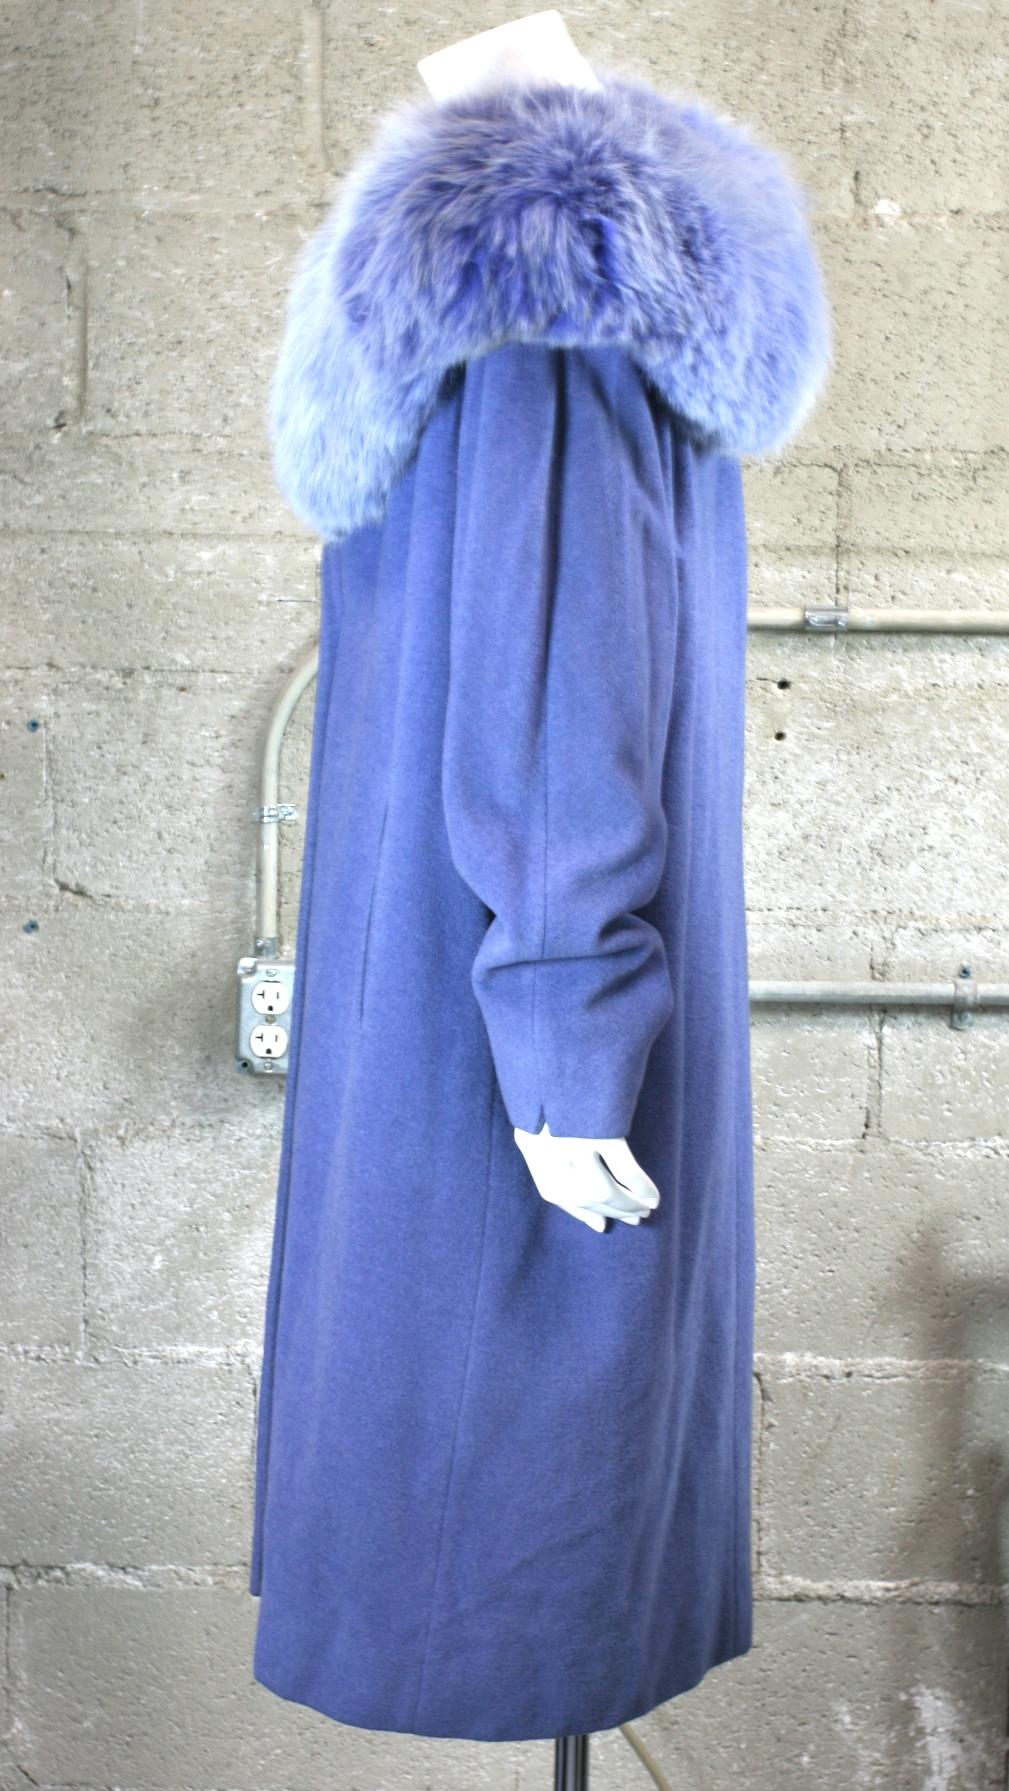 Veilchenblauer Mantel aus Wolle/Kaschmir und Fuchsfell. Erstaunlich intensive Färbungen, zum Einwickeln und Umklammern oder offen getragen werden. Der Ausschnitt ist sehr offen und der Pelz verlängert die Schulterlinie nach außen. Tiefe